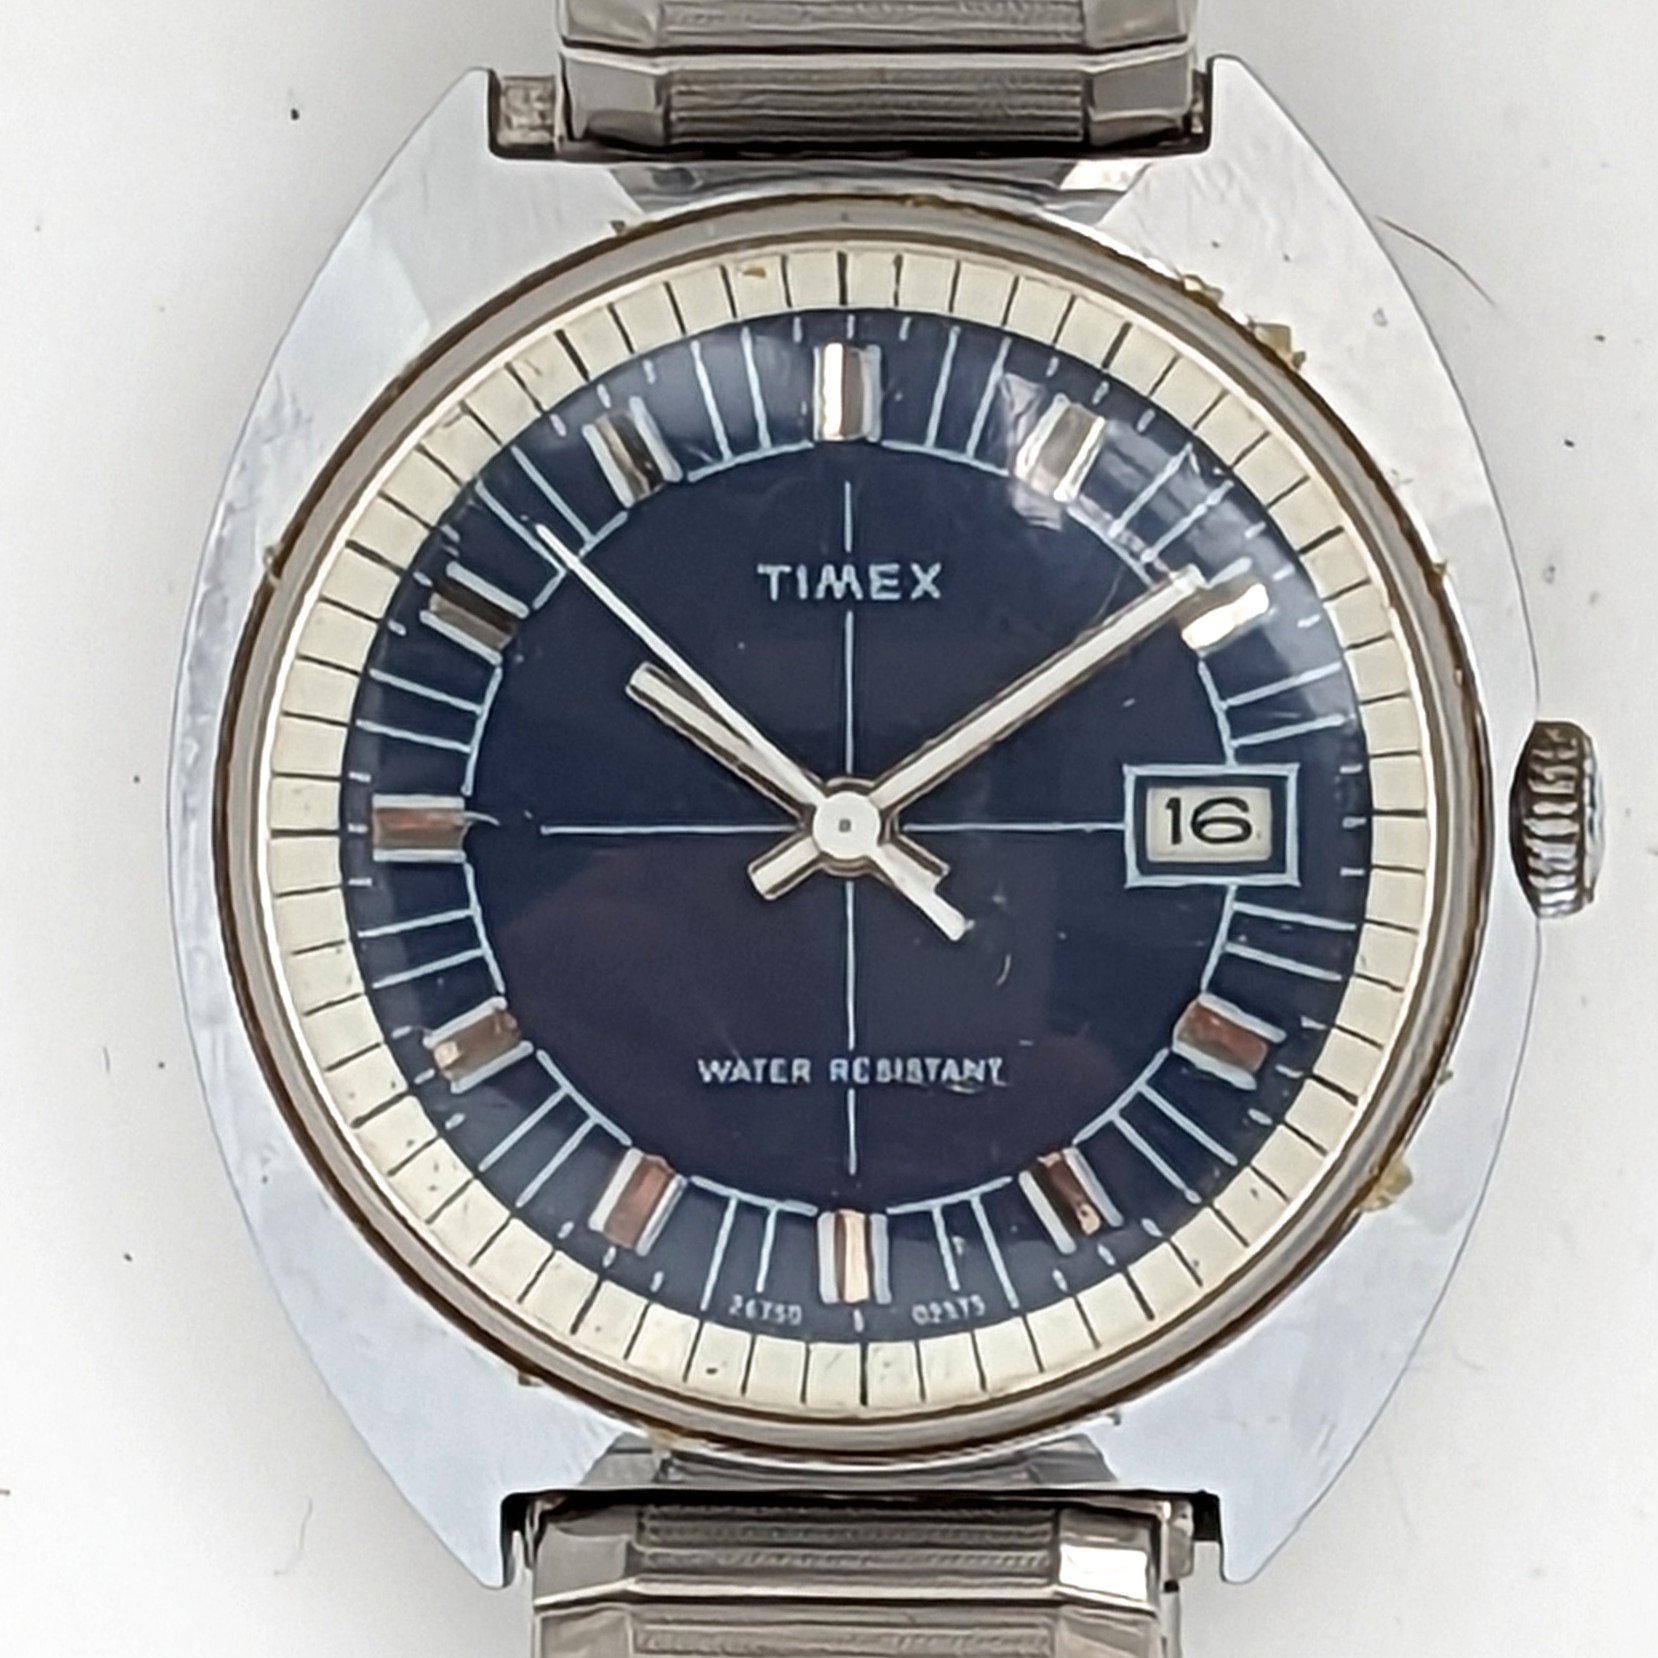 Timex Marlin 23613 02575 [1975]